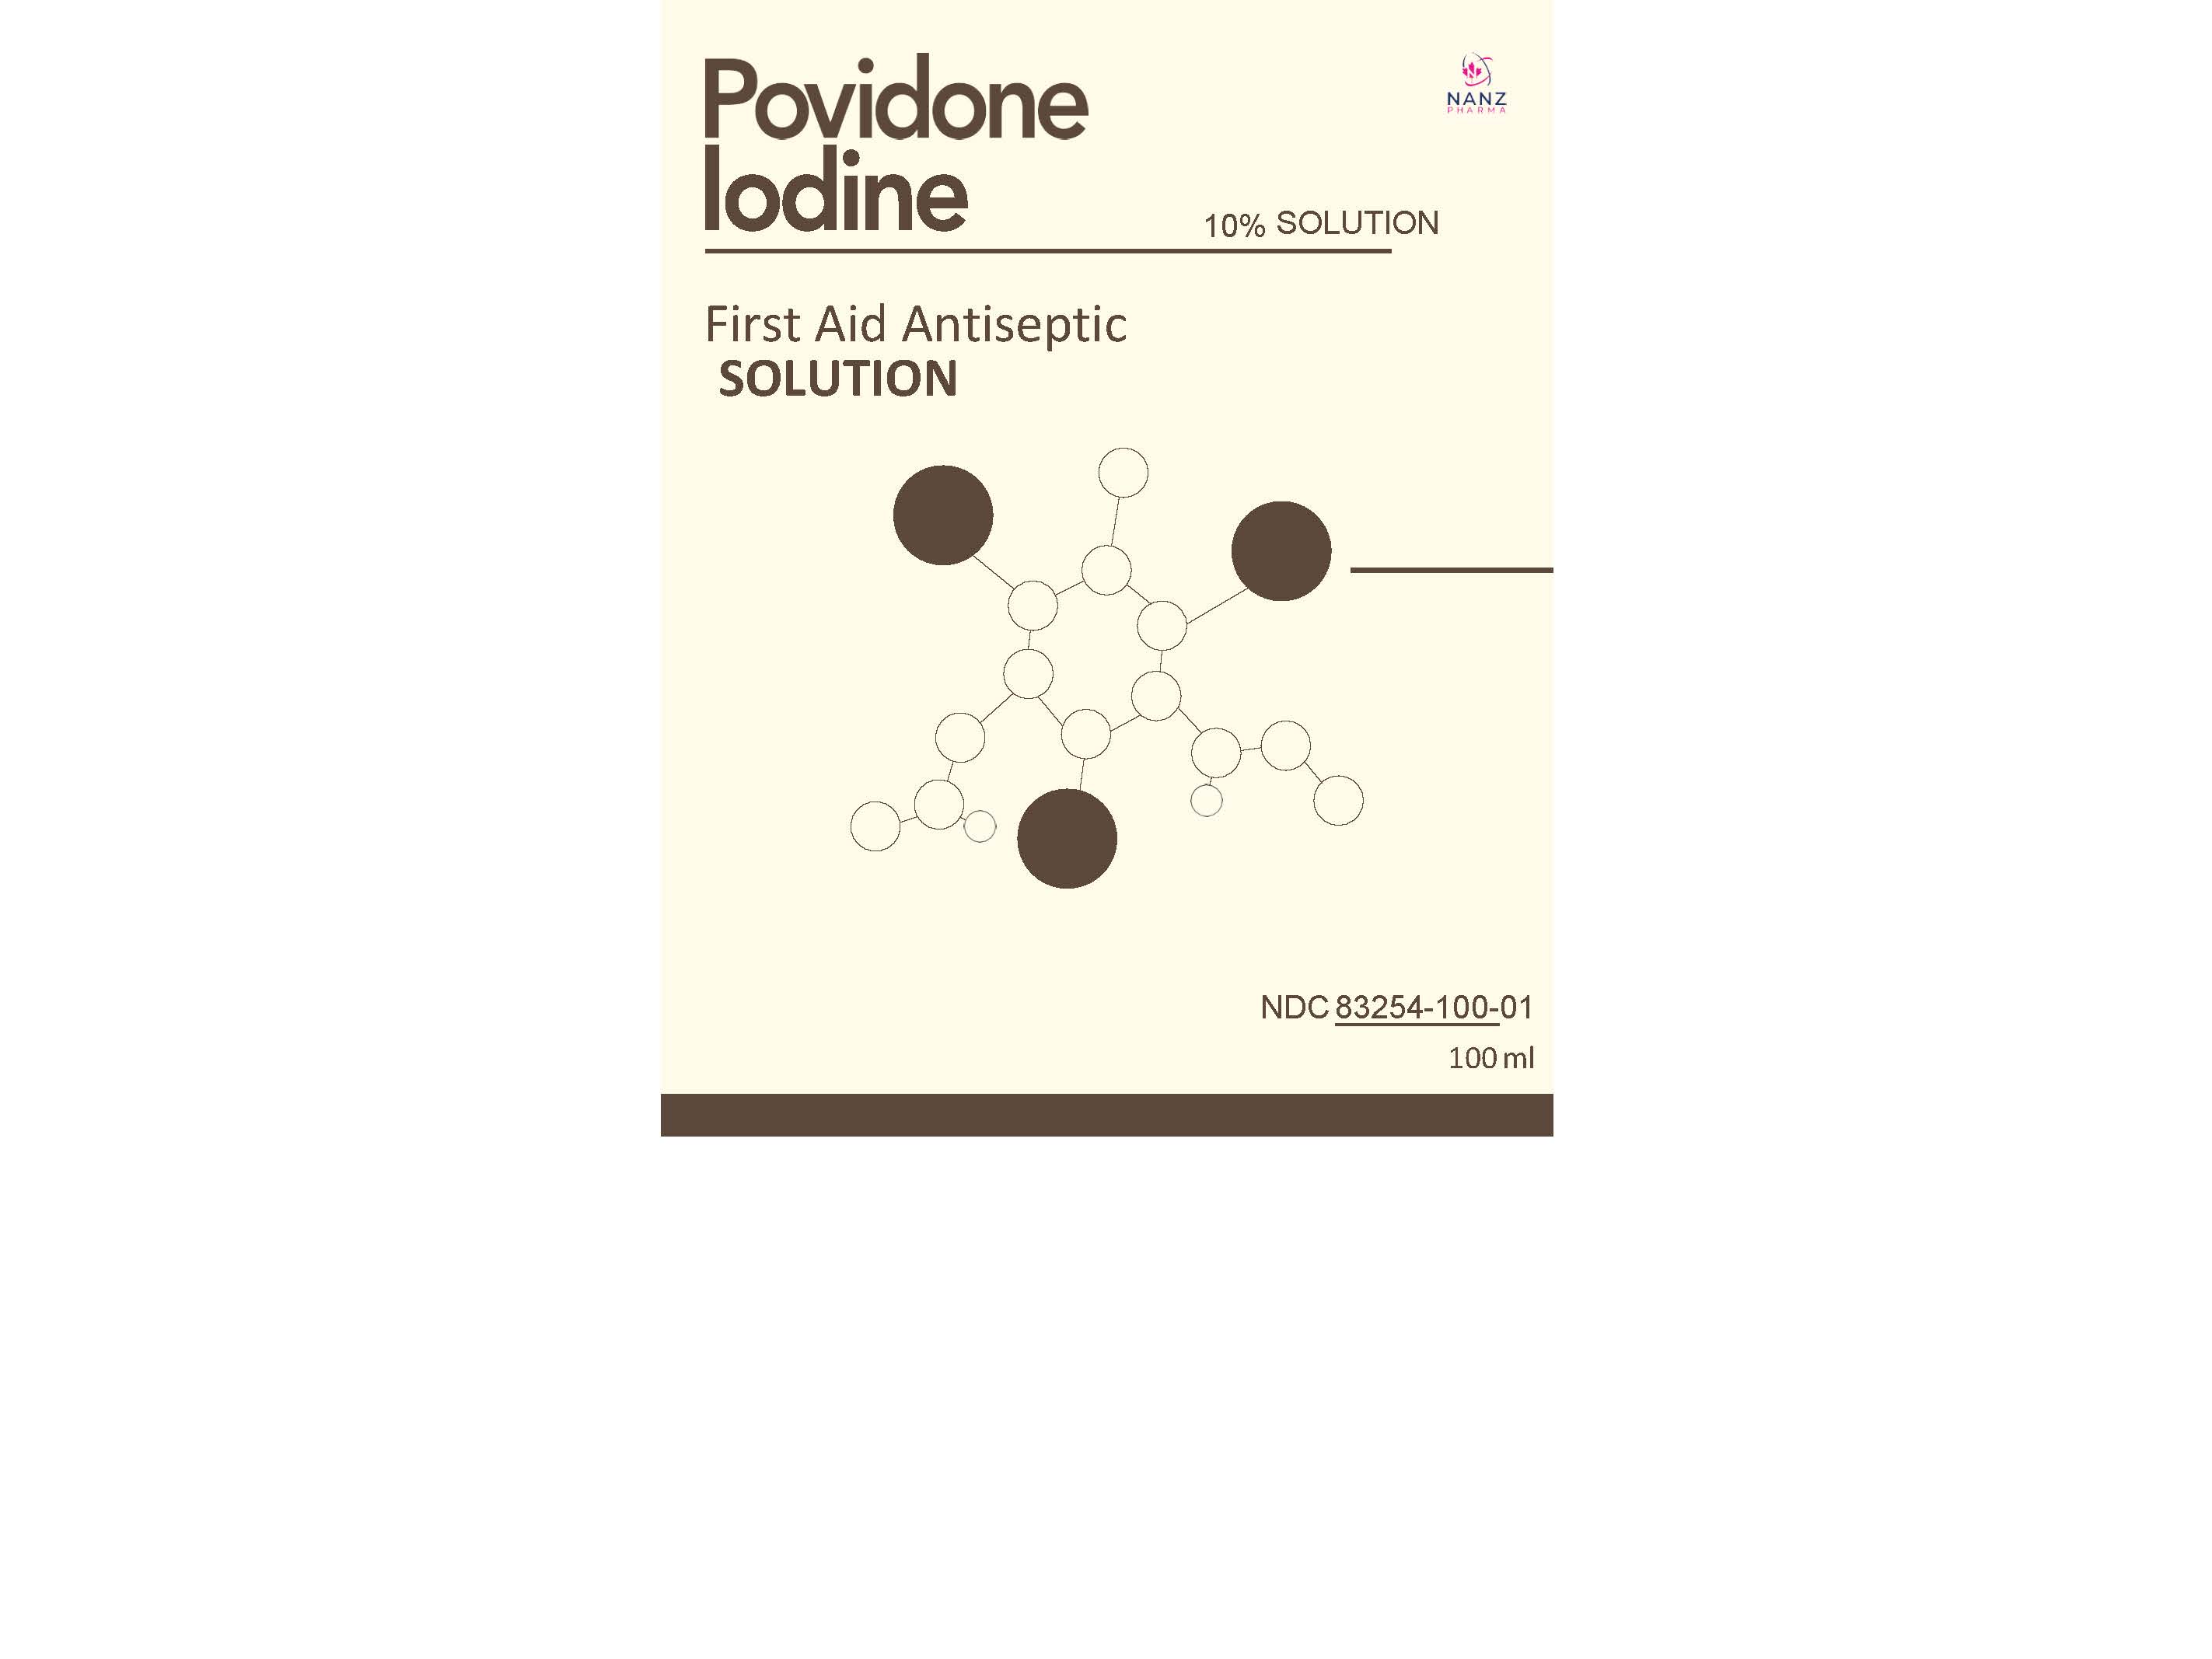 Label for all povidone iodine 10 percent